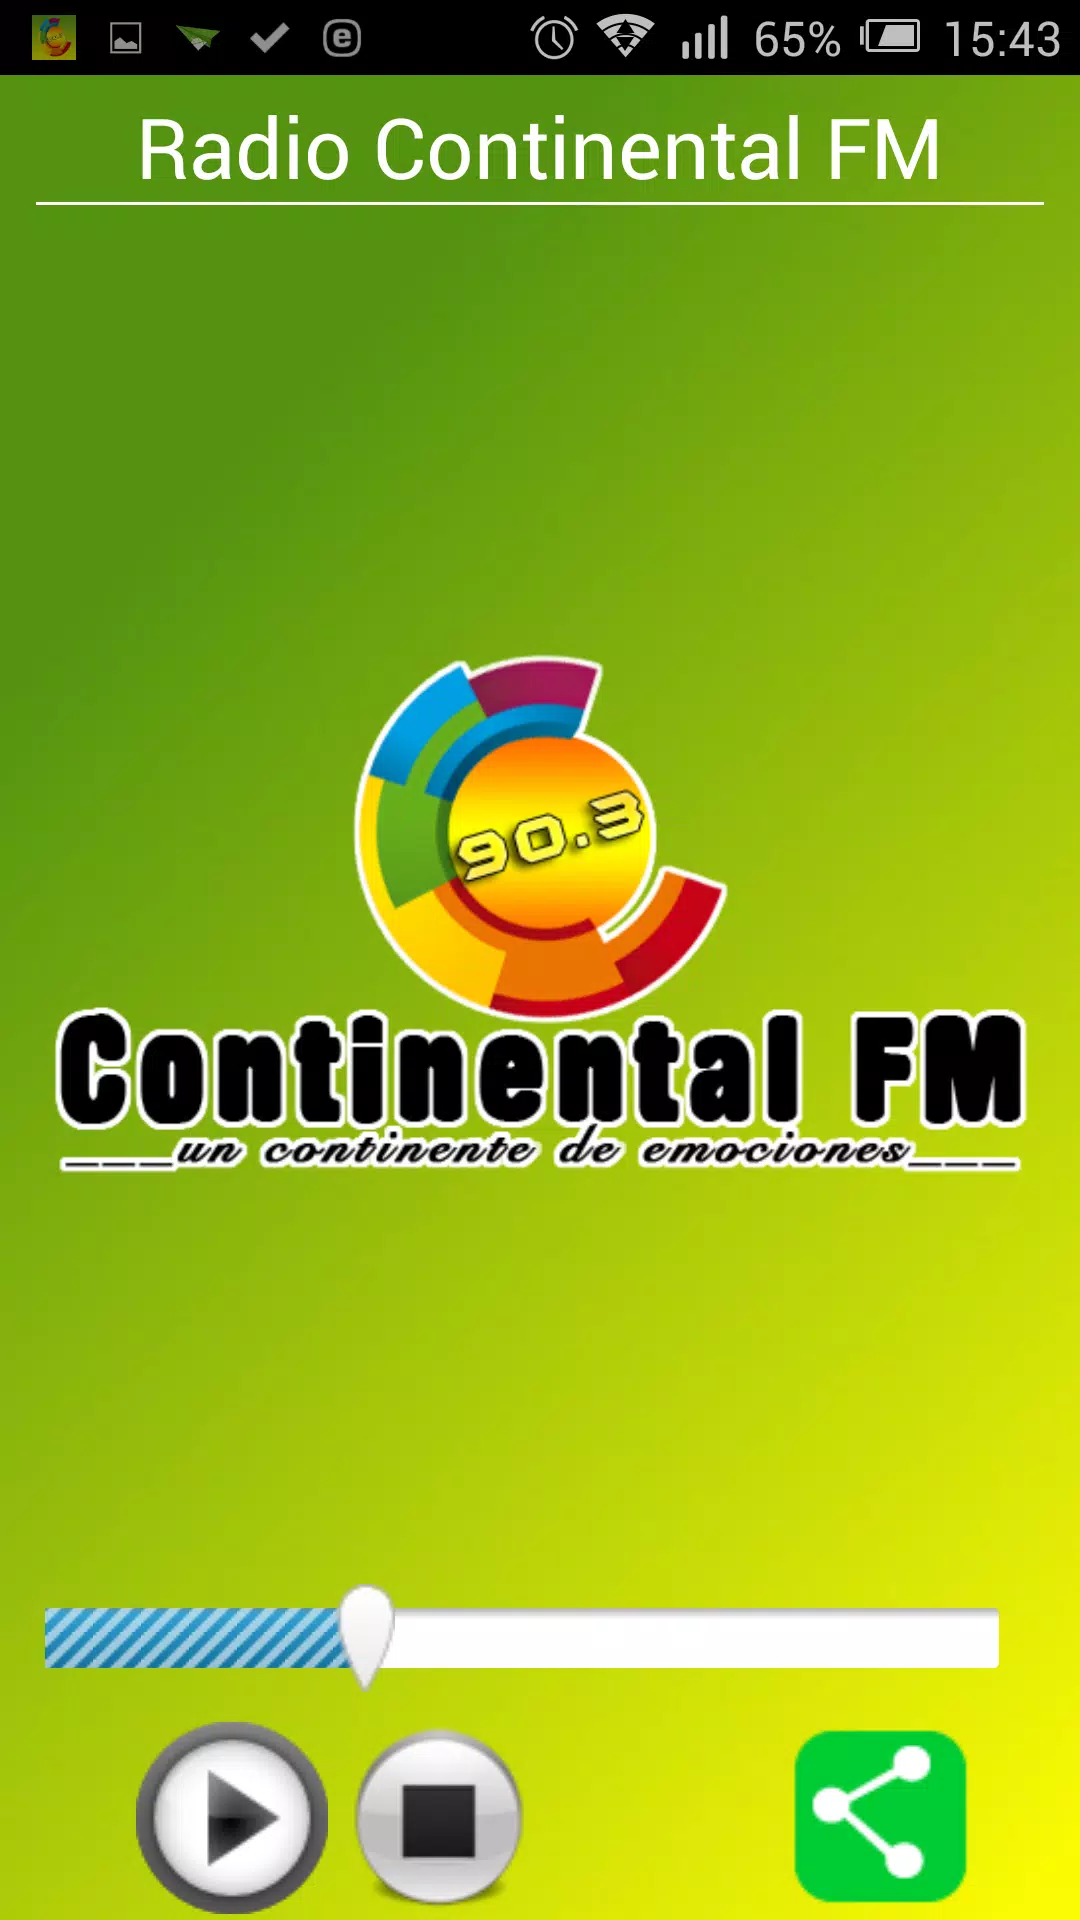 Descarga de APK de Radio Continental FM 90.3 para Android